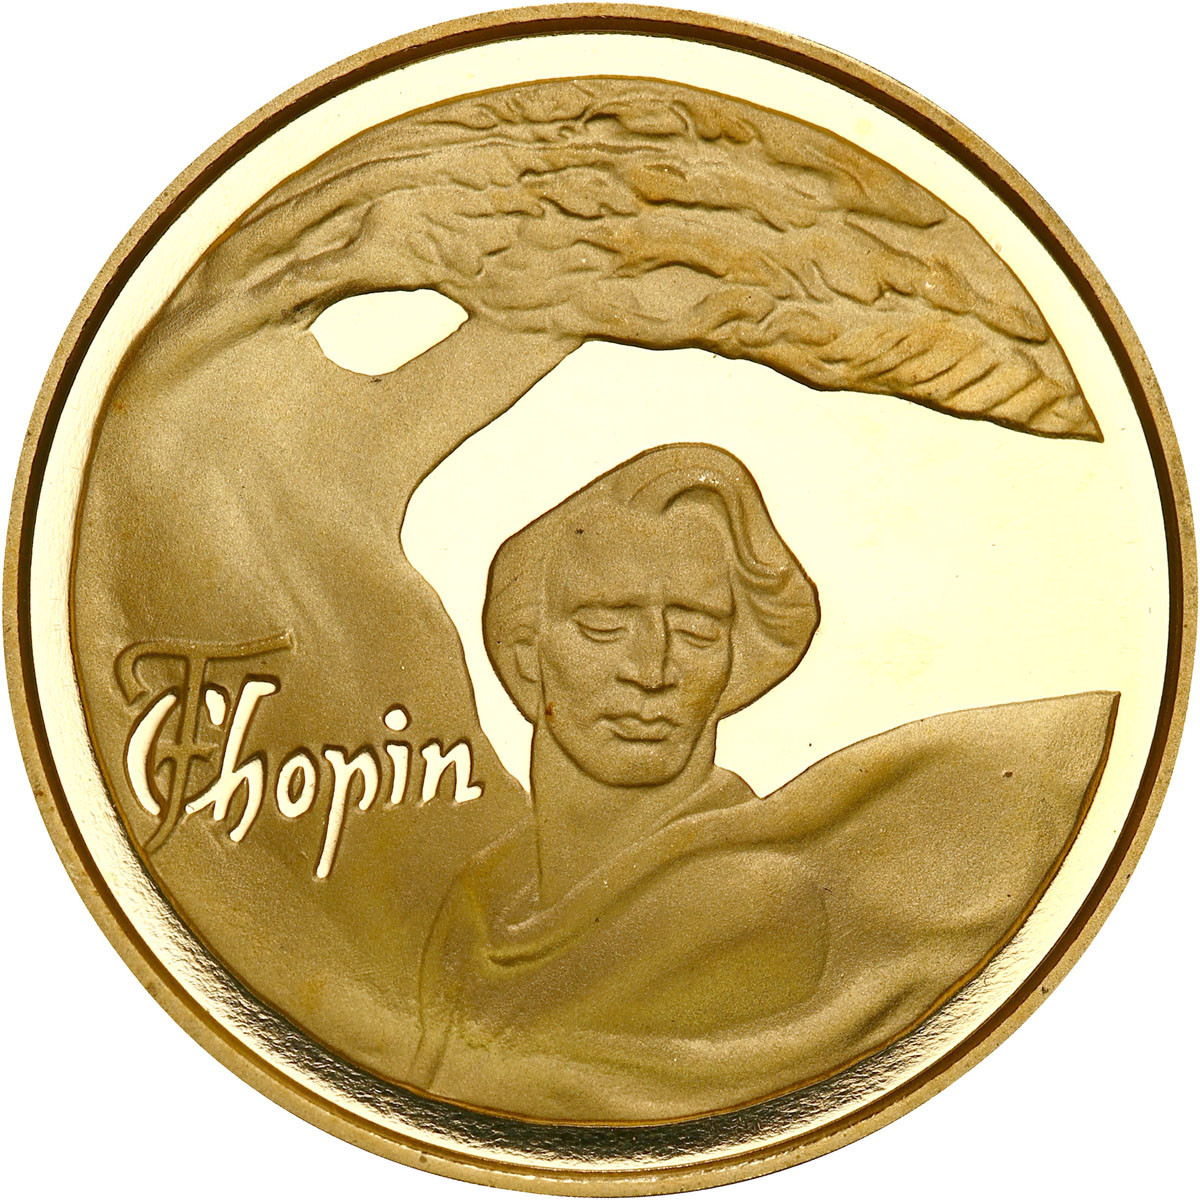 200 złotych 1995 Konkurs Chopinowski - Fryderyk Chopin - NAJRZADSZA MONETA 200-złotowa